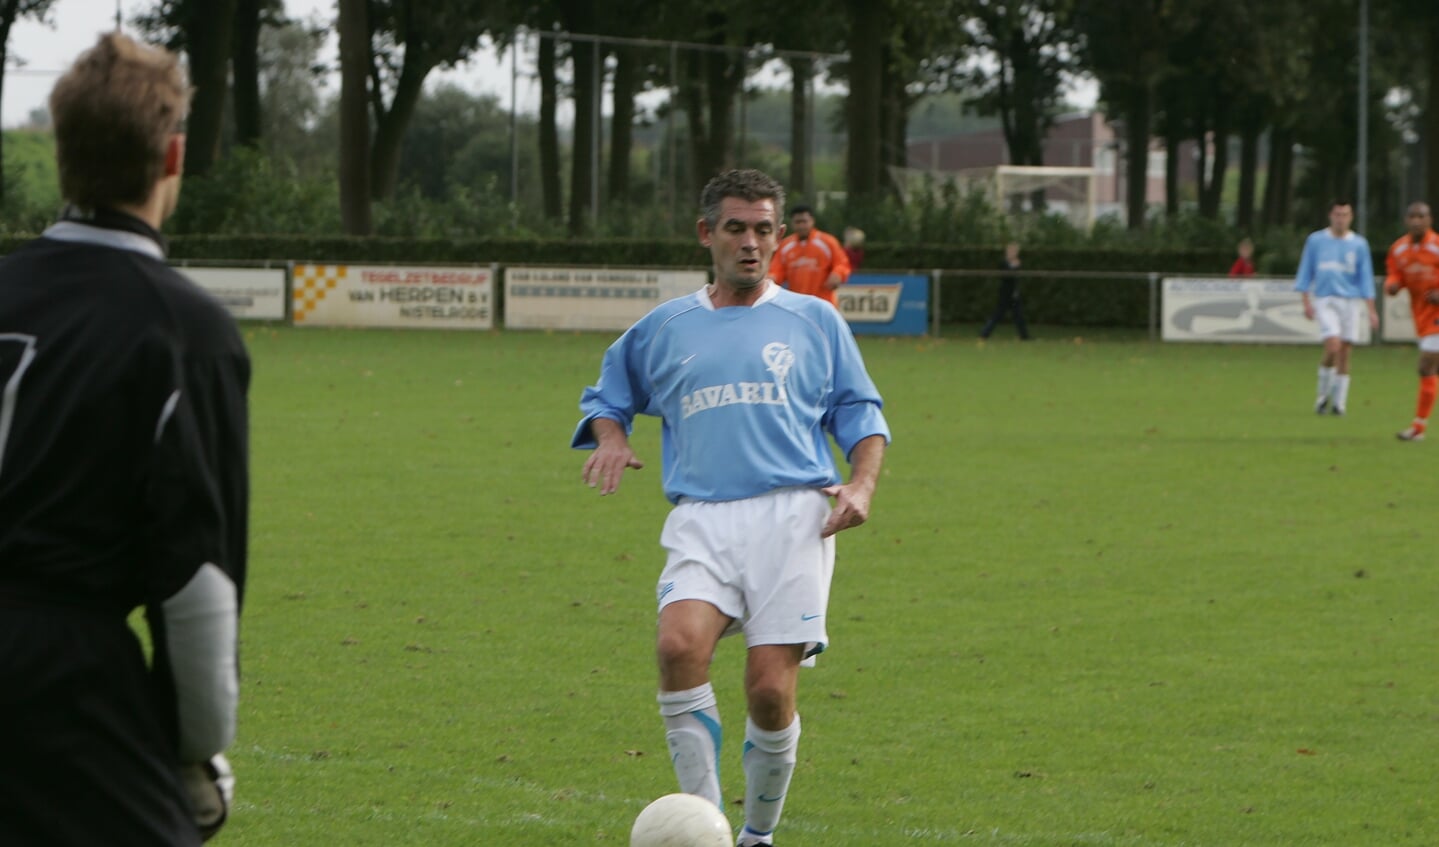 Wim Donkers als speler van ELI in 2006